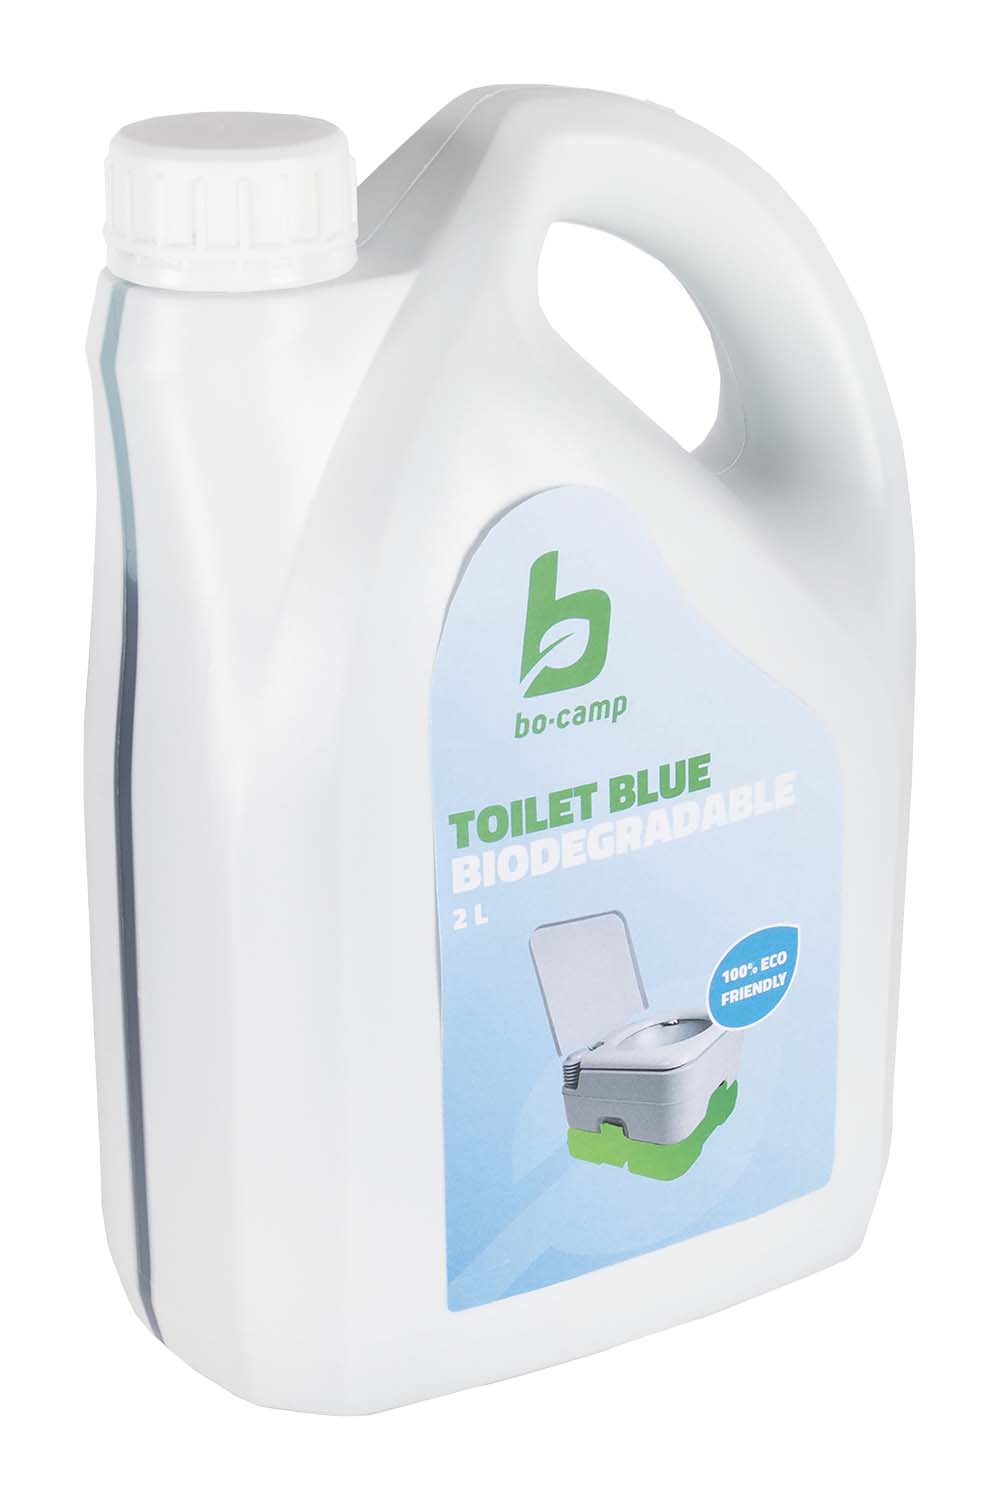 5507100 De Bo-Camp toiletvloeistof Blue is een milieuvriendelijke en extra geconcentreerde toiletvloeistof met een heerlijk frisse geur. De toiletvloeistof is geschikt voor dagelijk gebruik voor de afvaltank van een chemisch toilet. De vloeistof is biologisch afbreekbaar en onderdrukt onaangename luchtjes, bevordert de afbraak van vaste bestanddelen en toiletpapier, reduceert gasvorming en houdt de afvaltank fris en schoon. Een flacon van 2 liter is geschikt voor ca. 20 keer navullen.